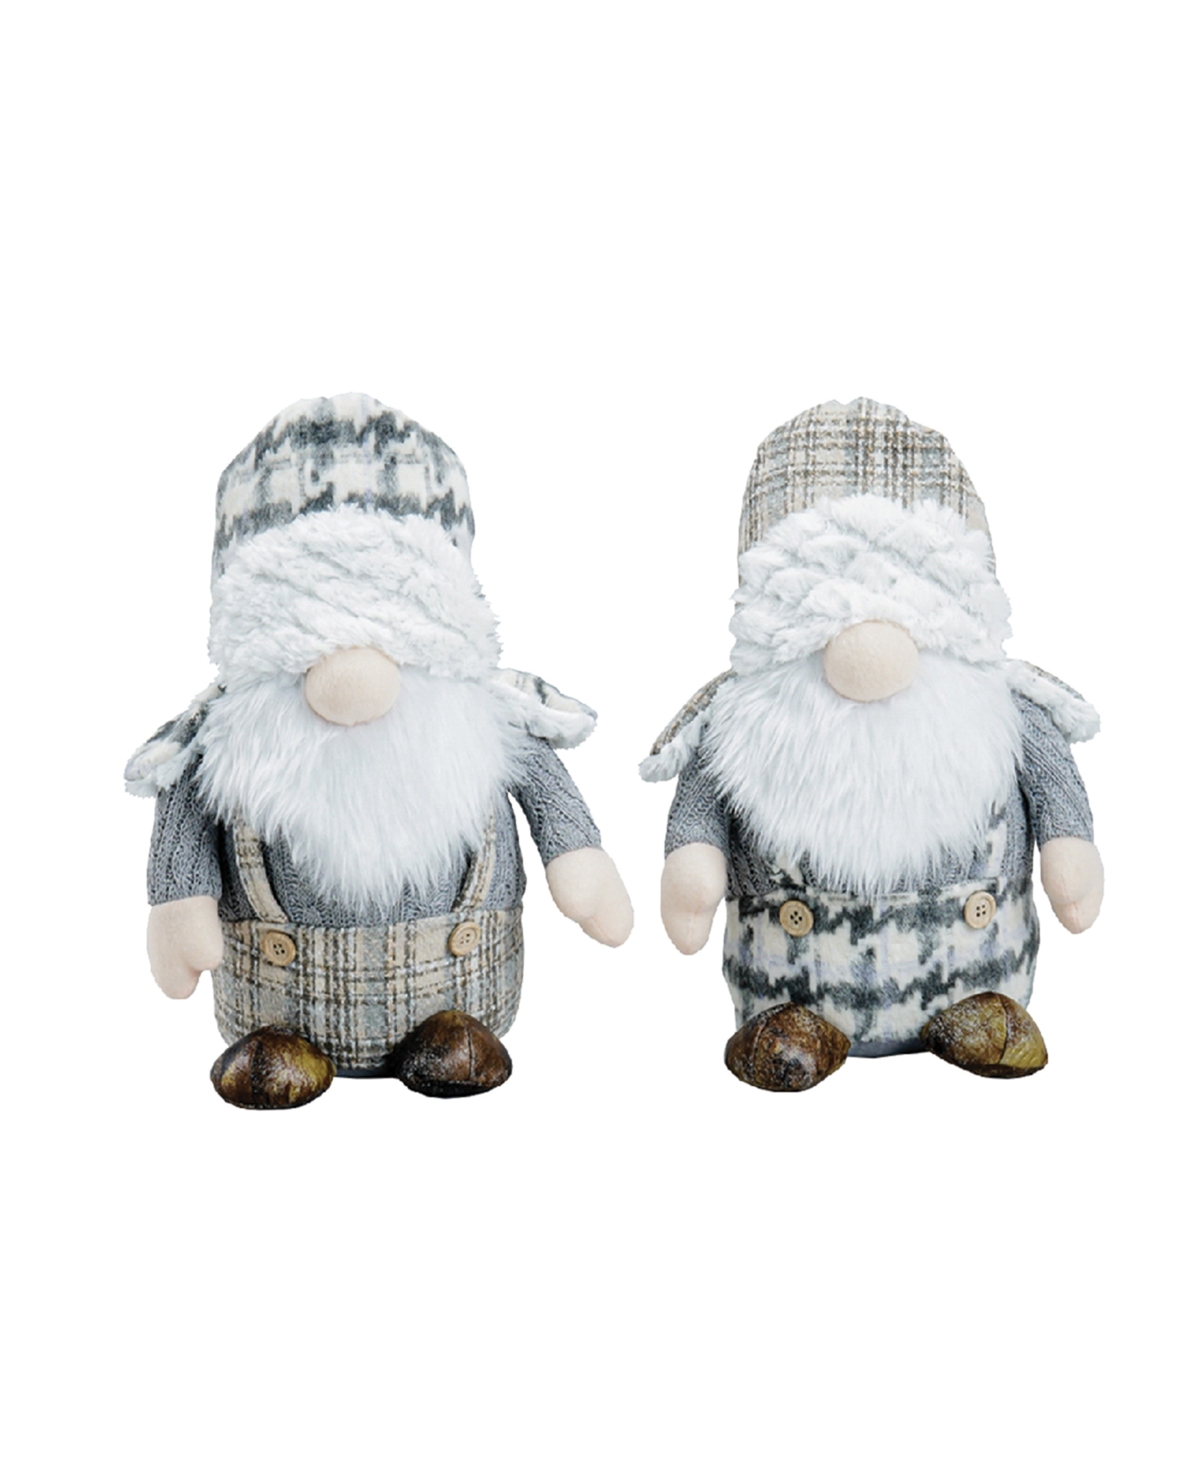 11" Plaid Gnomes, Set of 2 - Gray